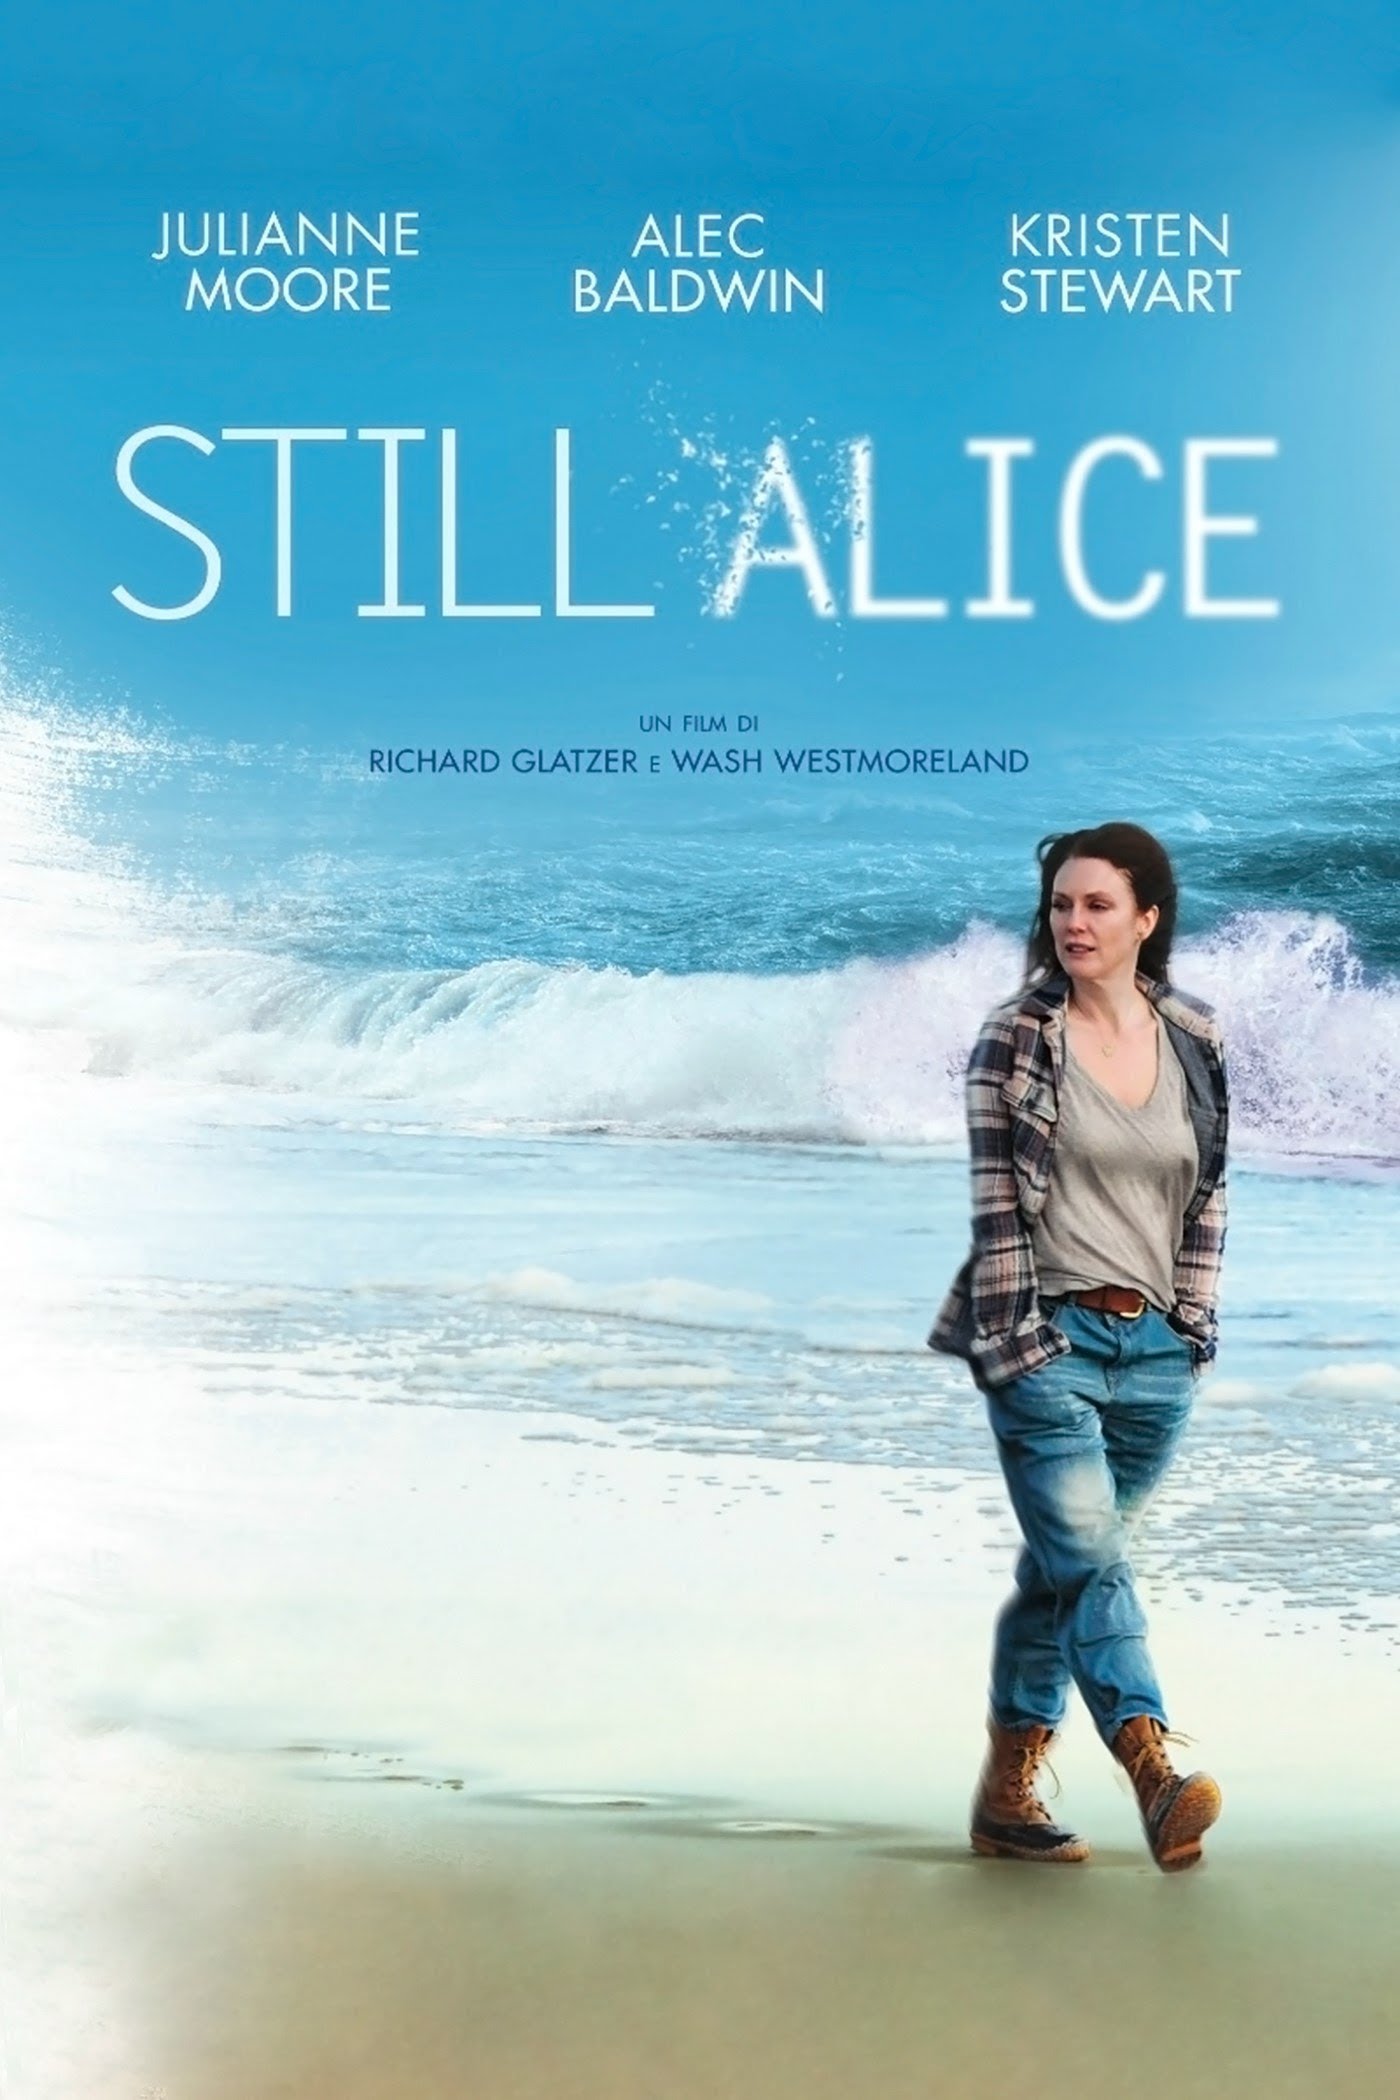 Still Alice [HD] (2015)